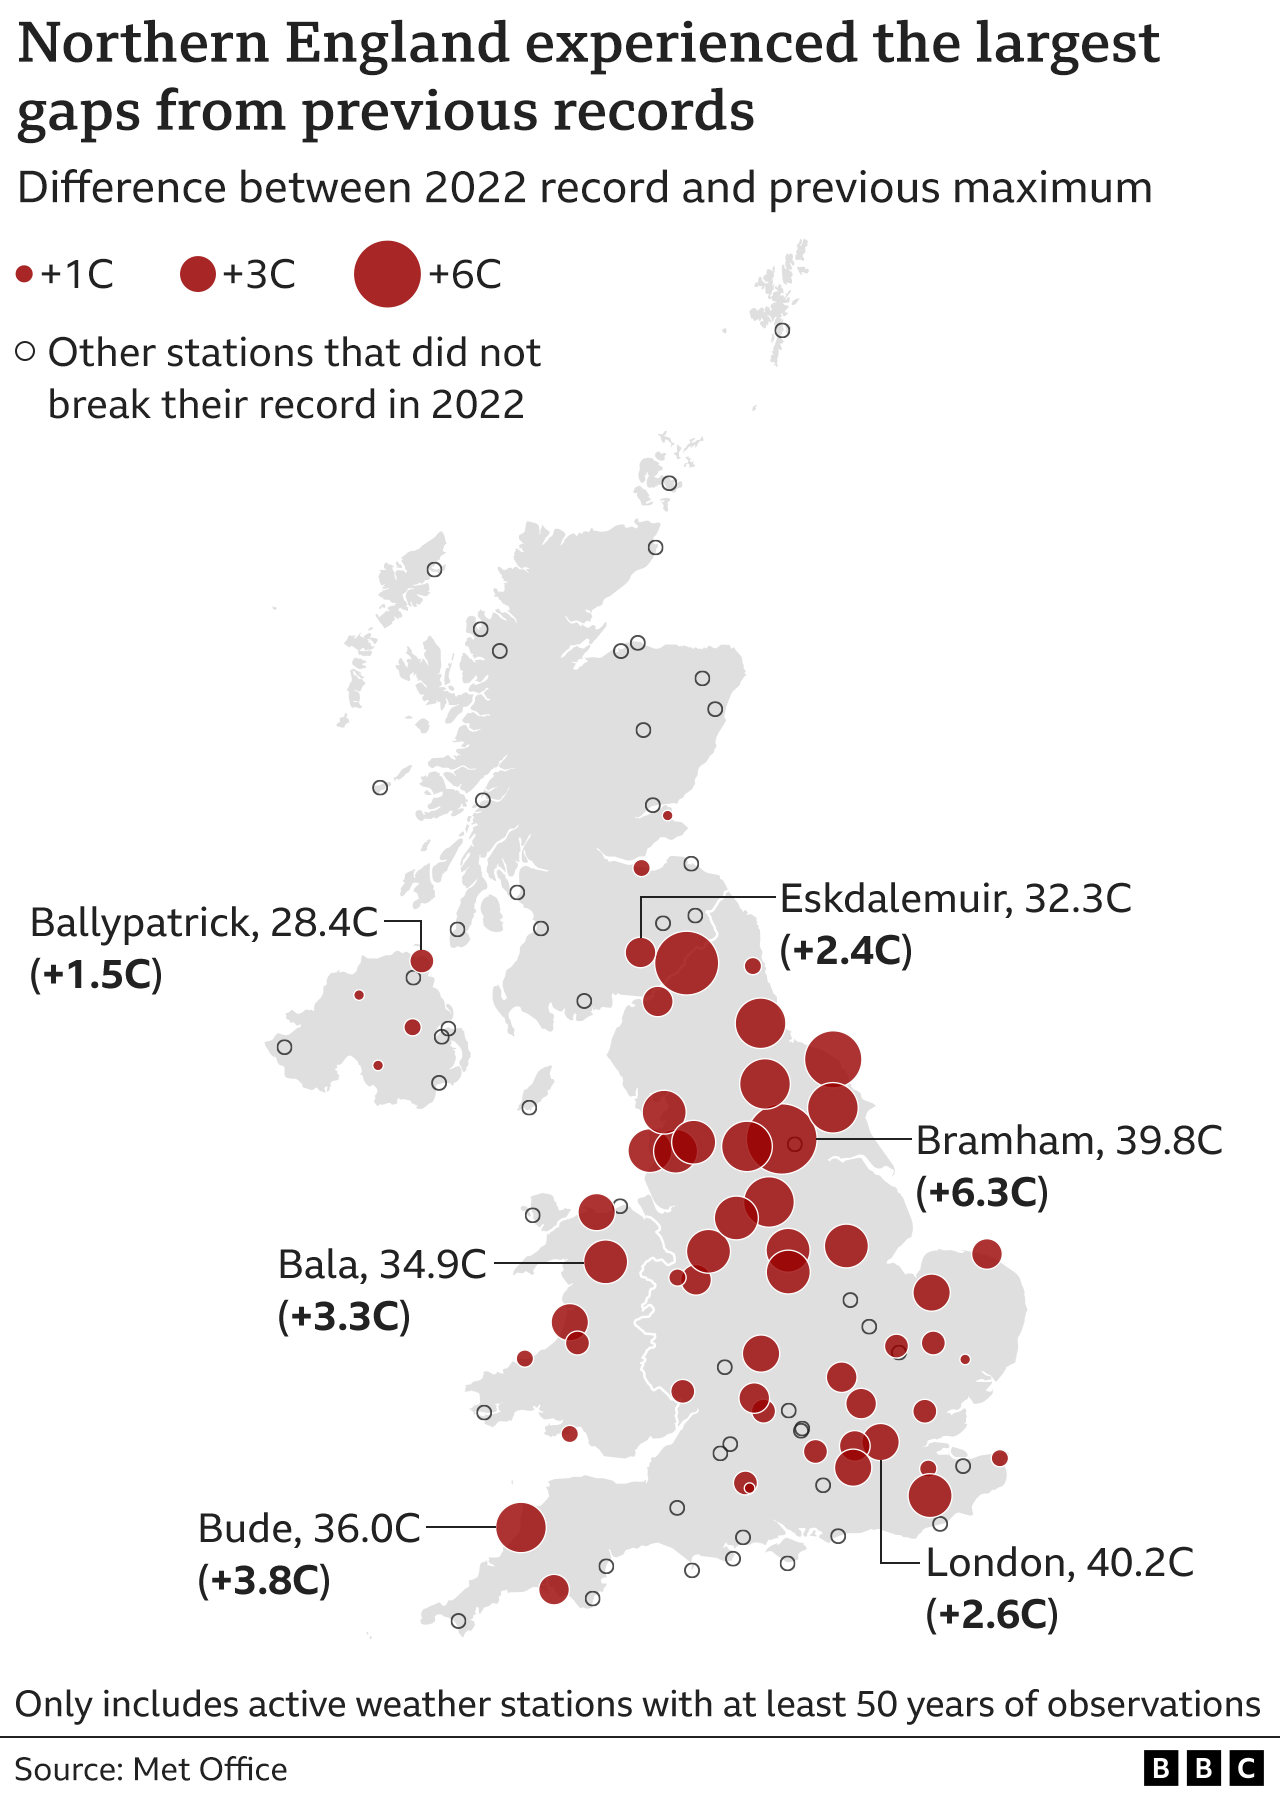 Карта, показывающая, как в Северной Англии наблюдались самые большие разрывы с предыдущими рекордами, при этом станции в Йоркшире, Северо-Восточной и Северо-Западной Англии были среди станций с наиболее значительным увеличением.